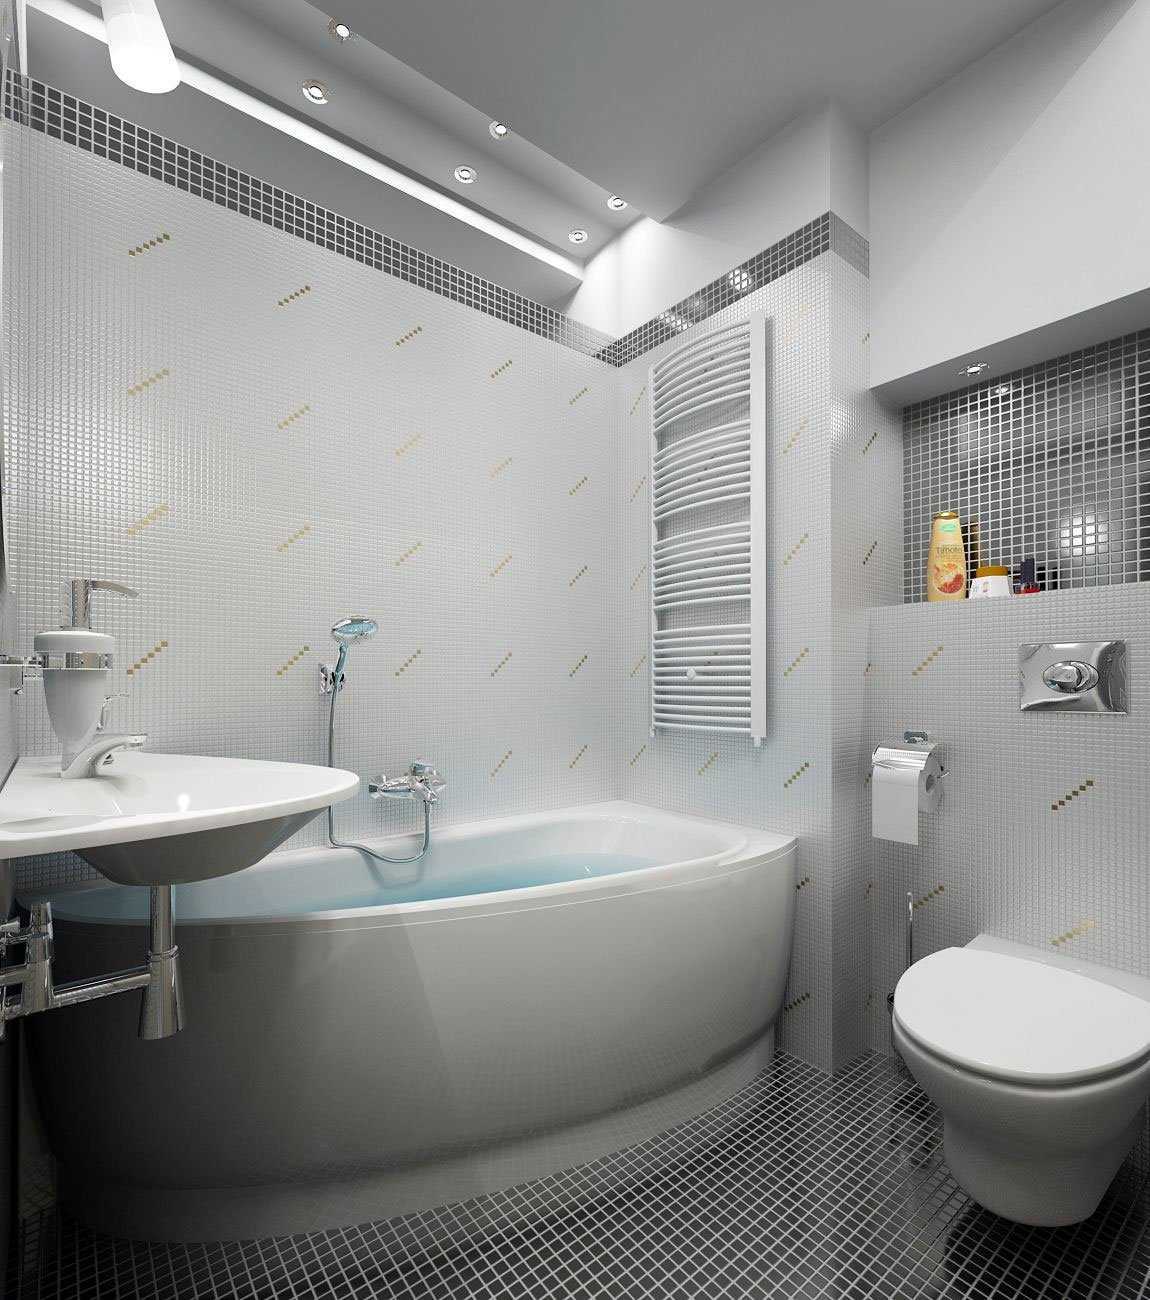 Дизайн ванной комнаты и туалета в хрущевке: советы и идеи по оформлению интерьера